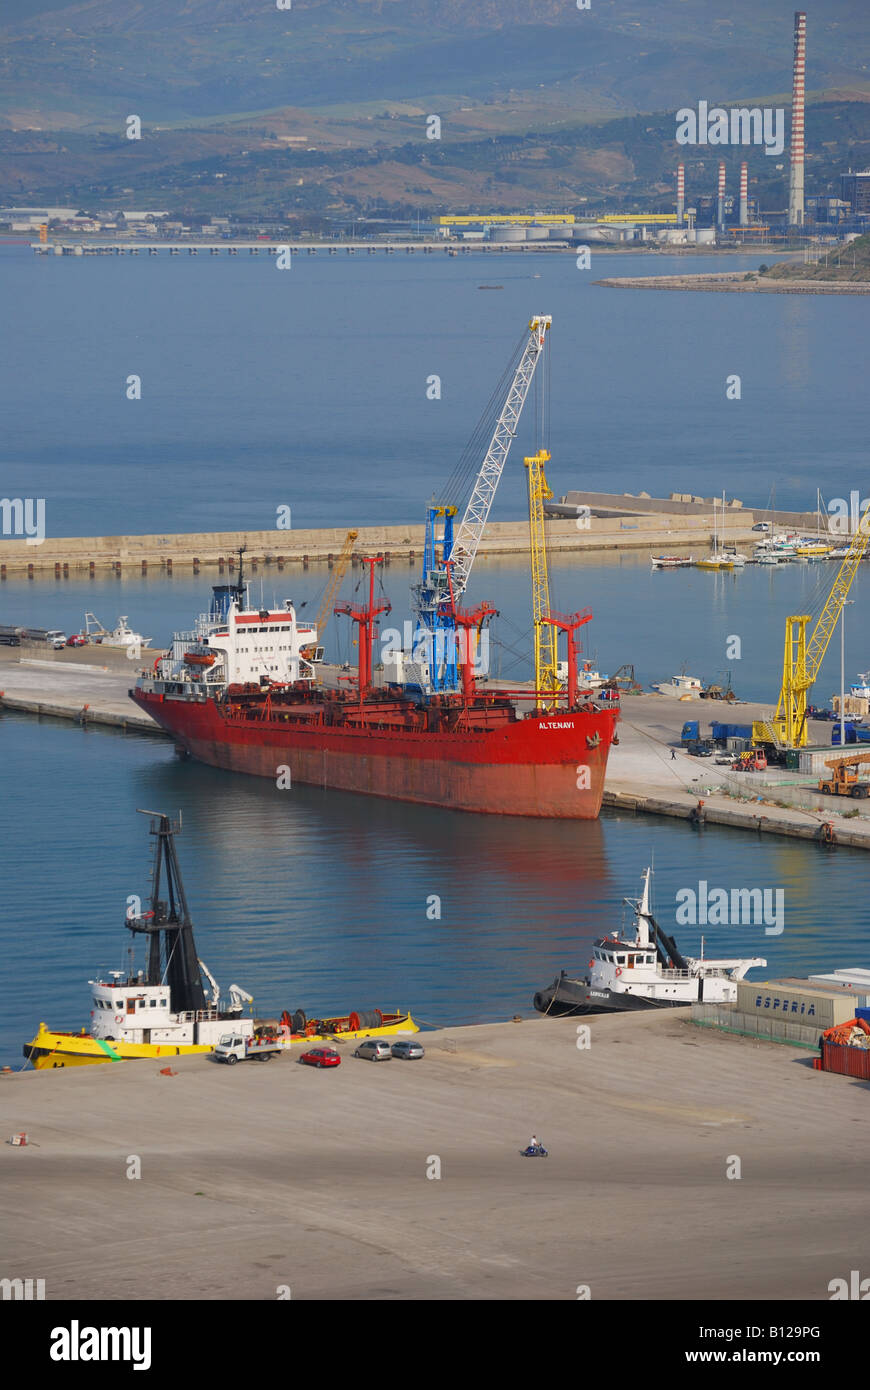 Lo scarico delle navi nel porto di Termini Imerese, provincia di Palermo, Sicilia, Italia Foto Stock